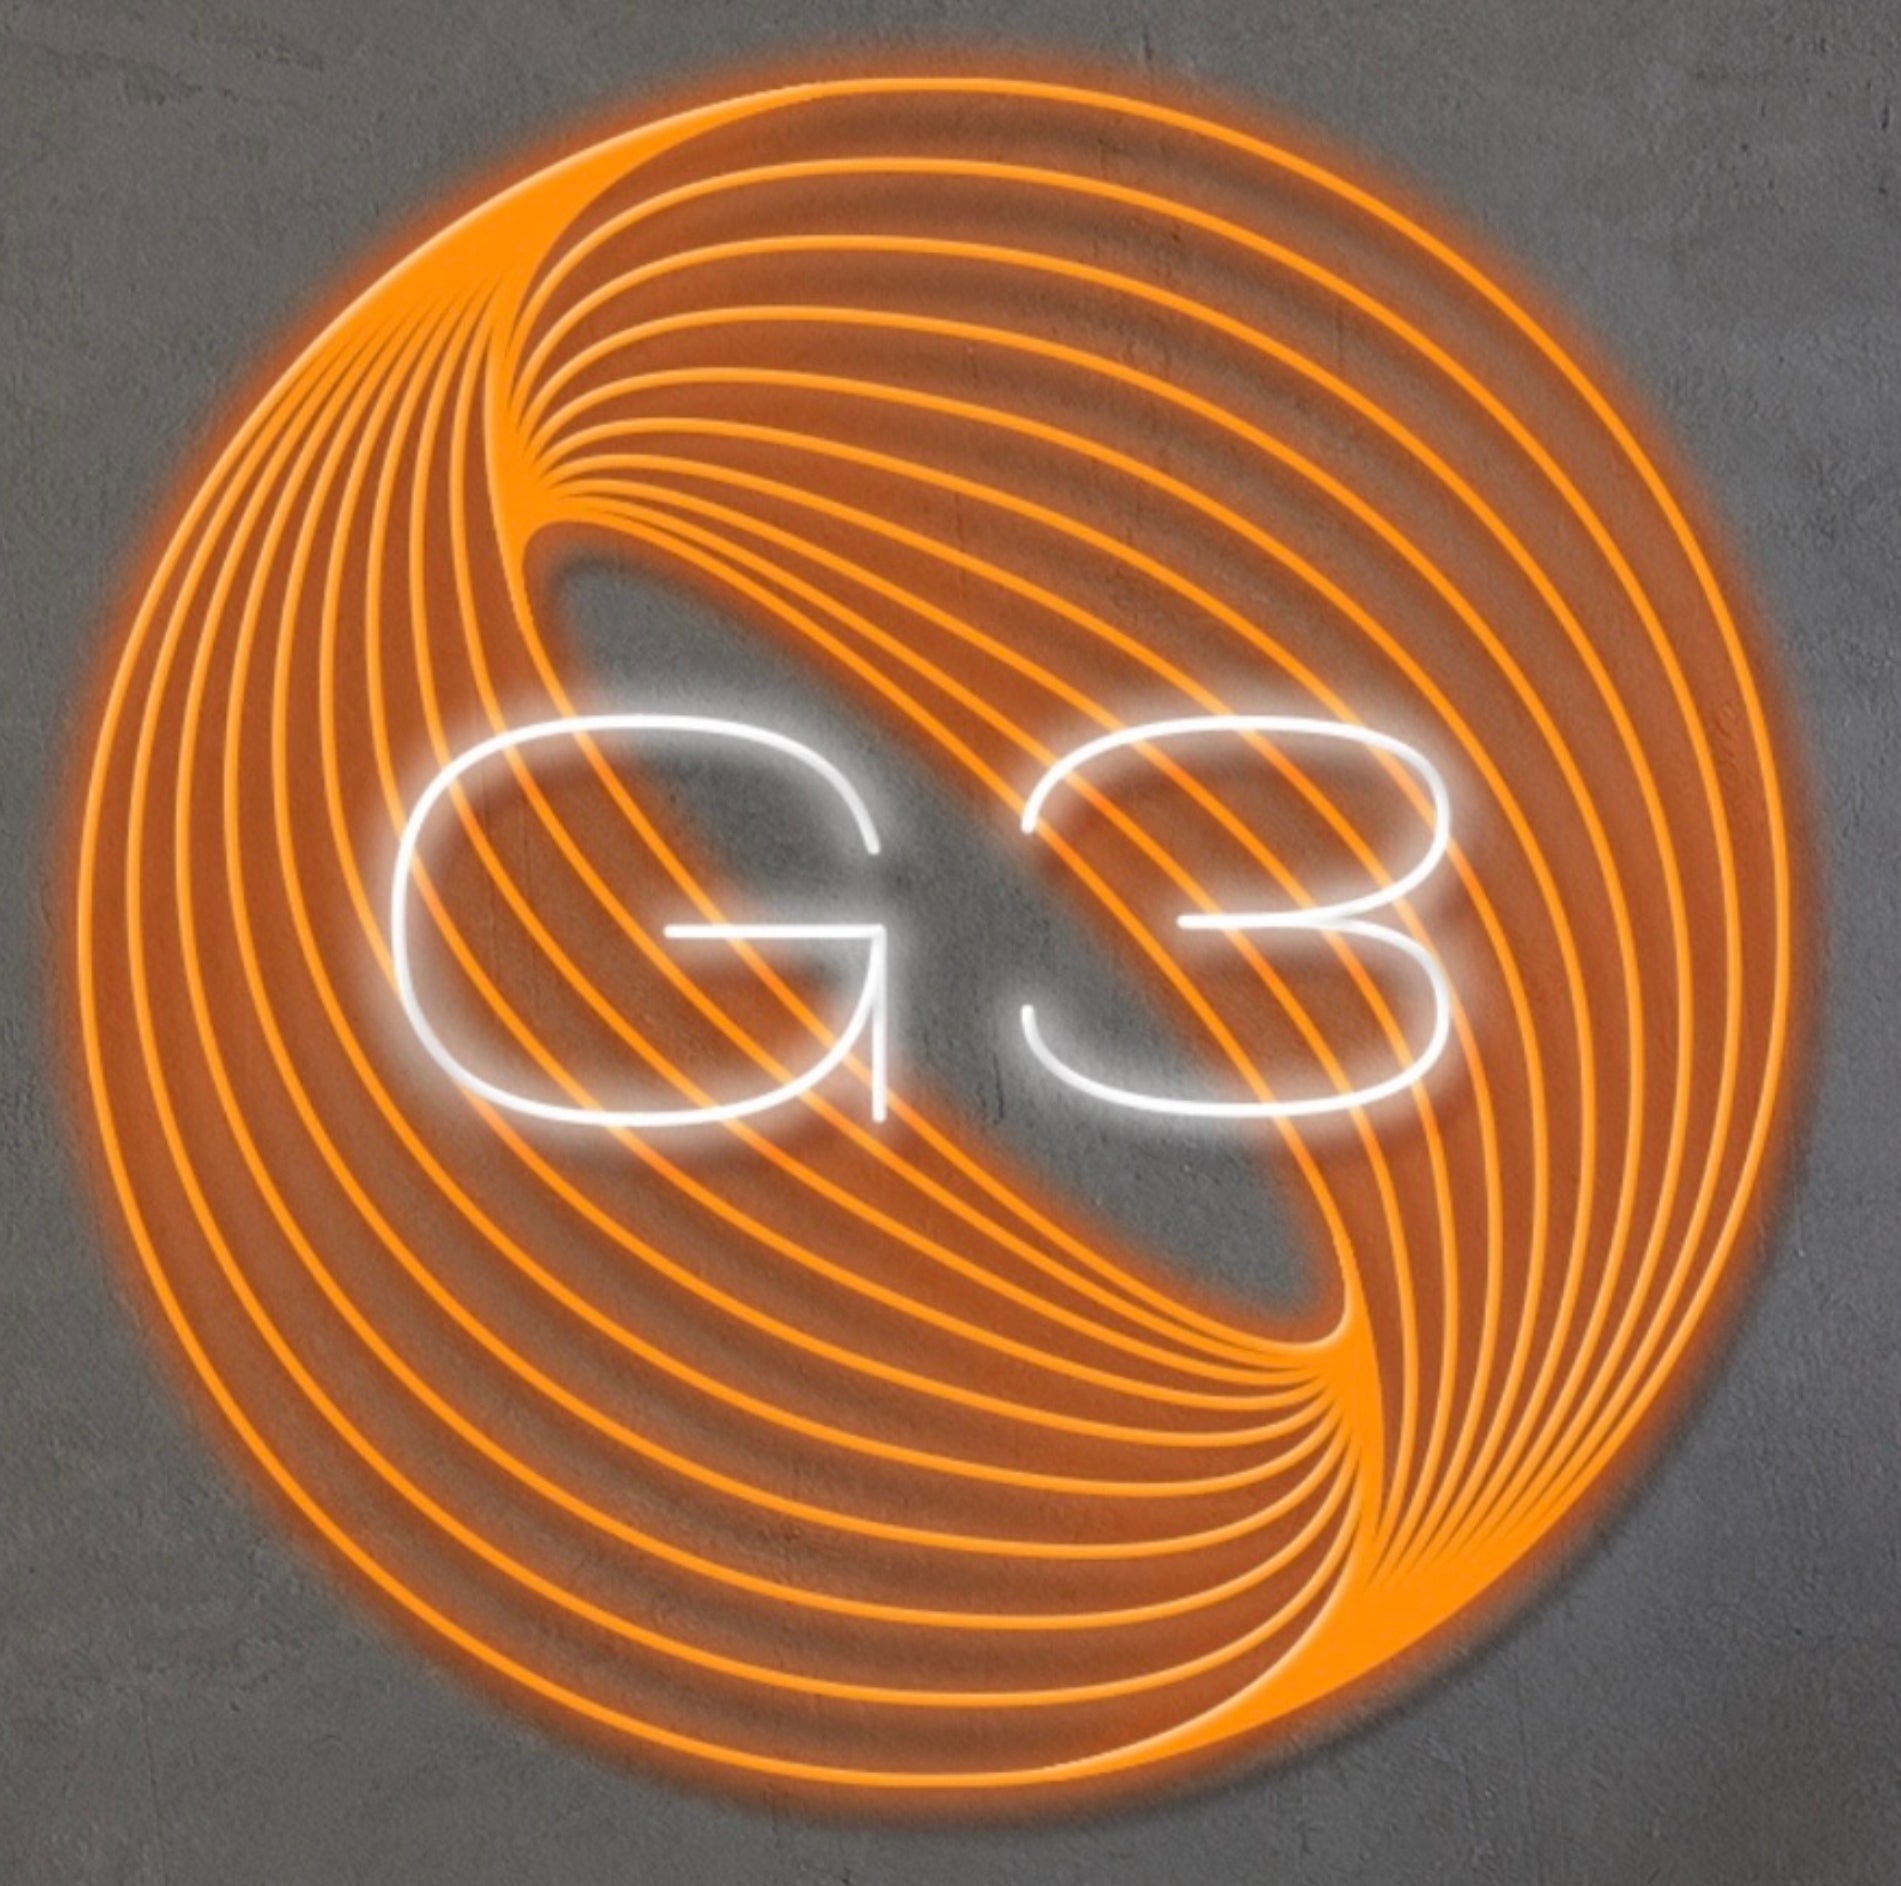 G3 Good 3nergy logo